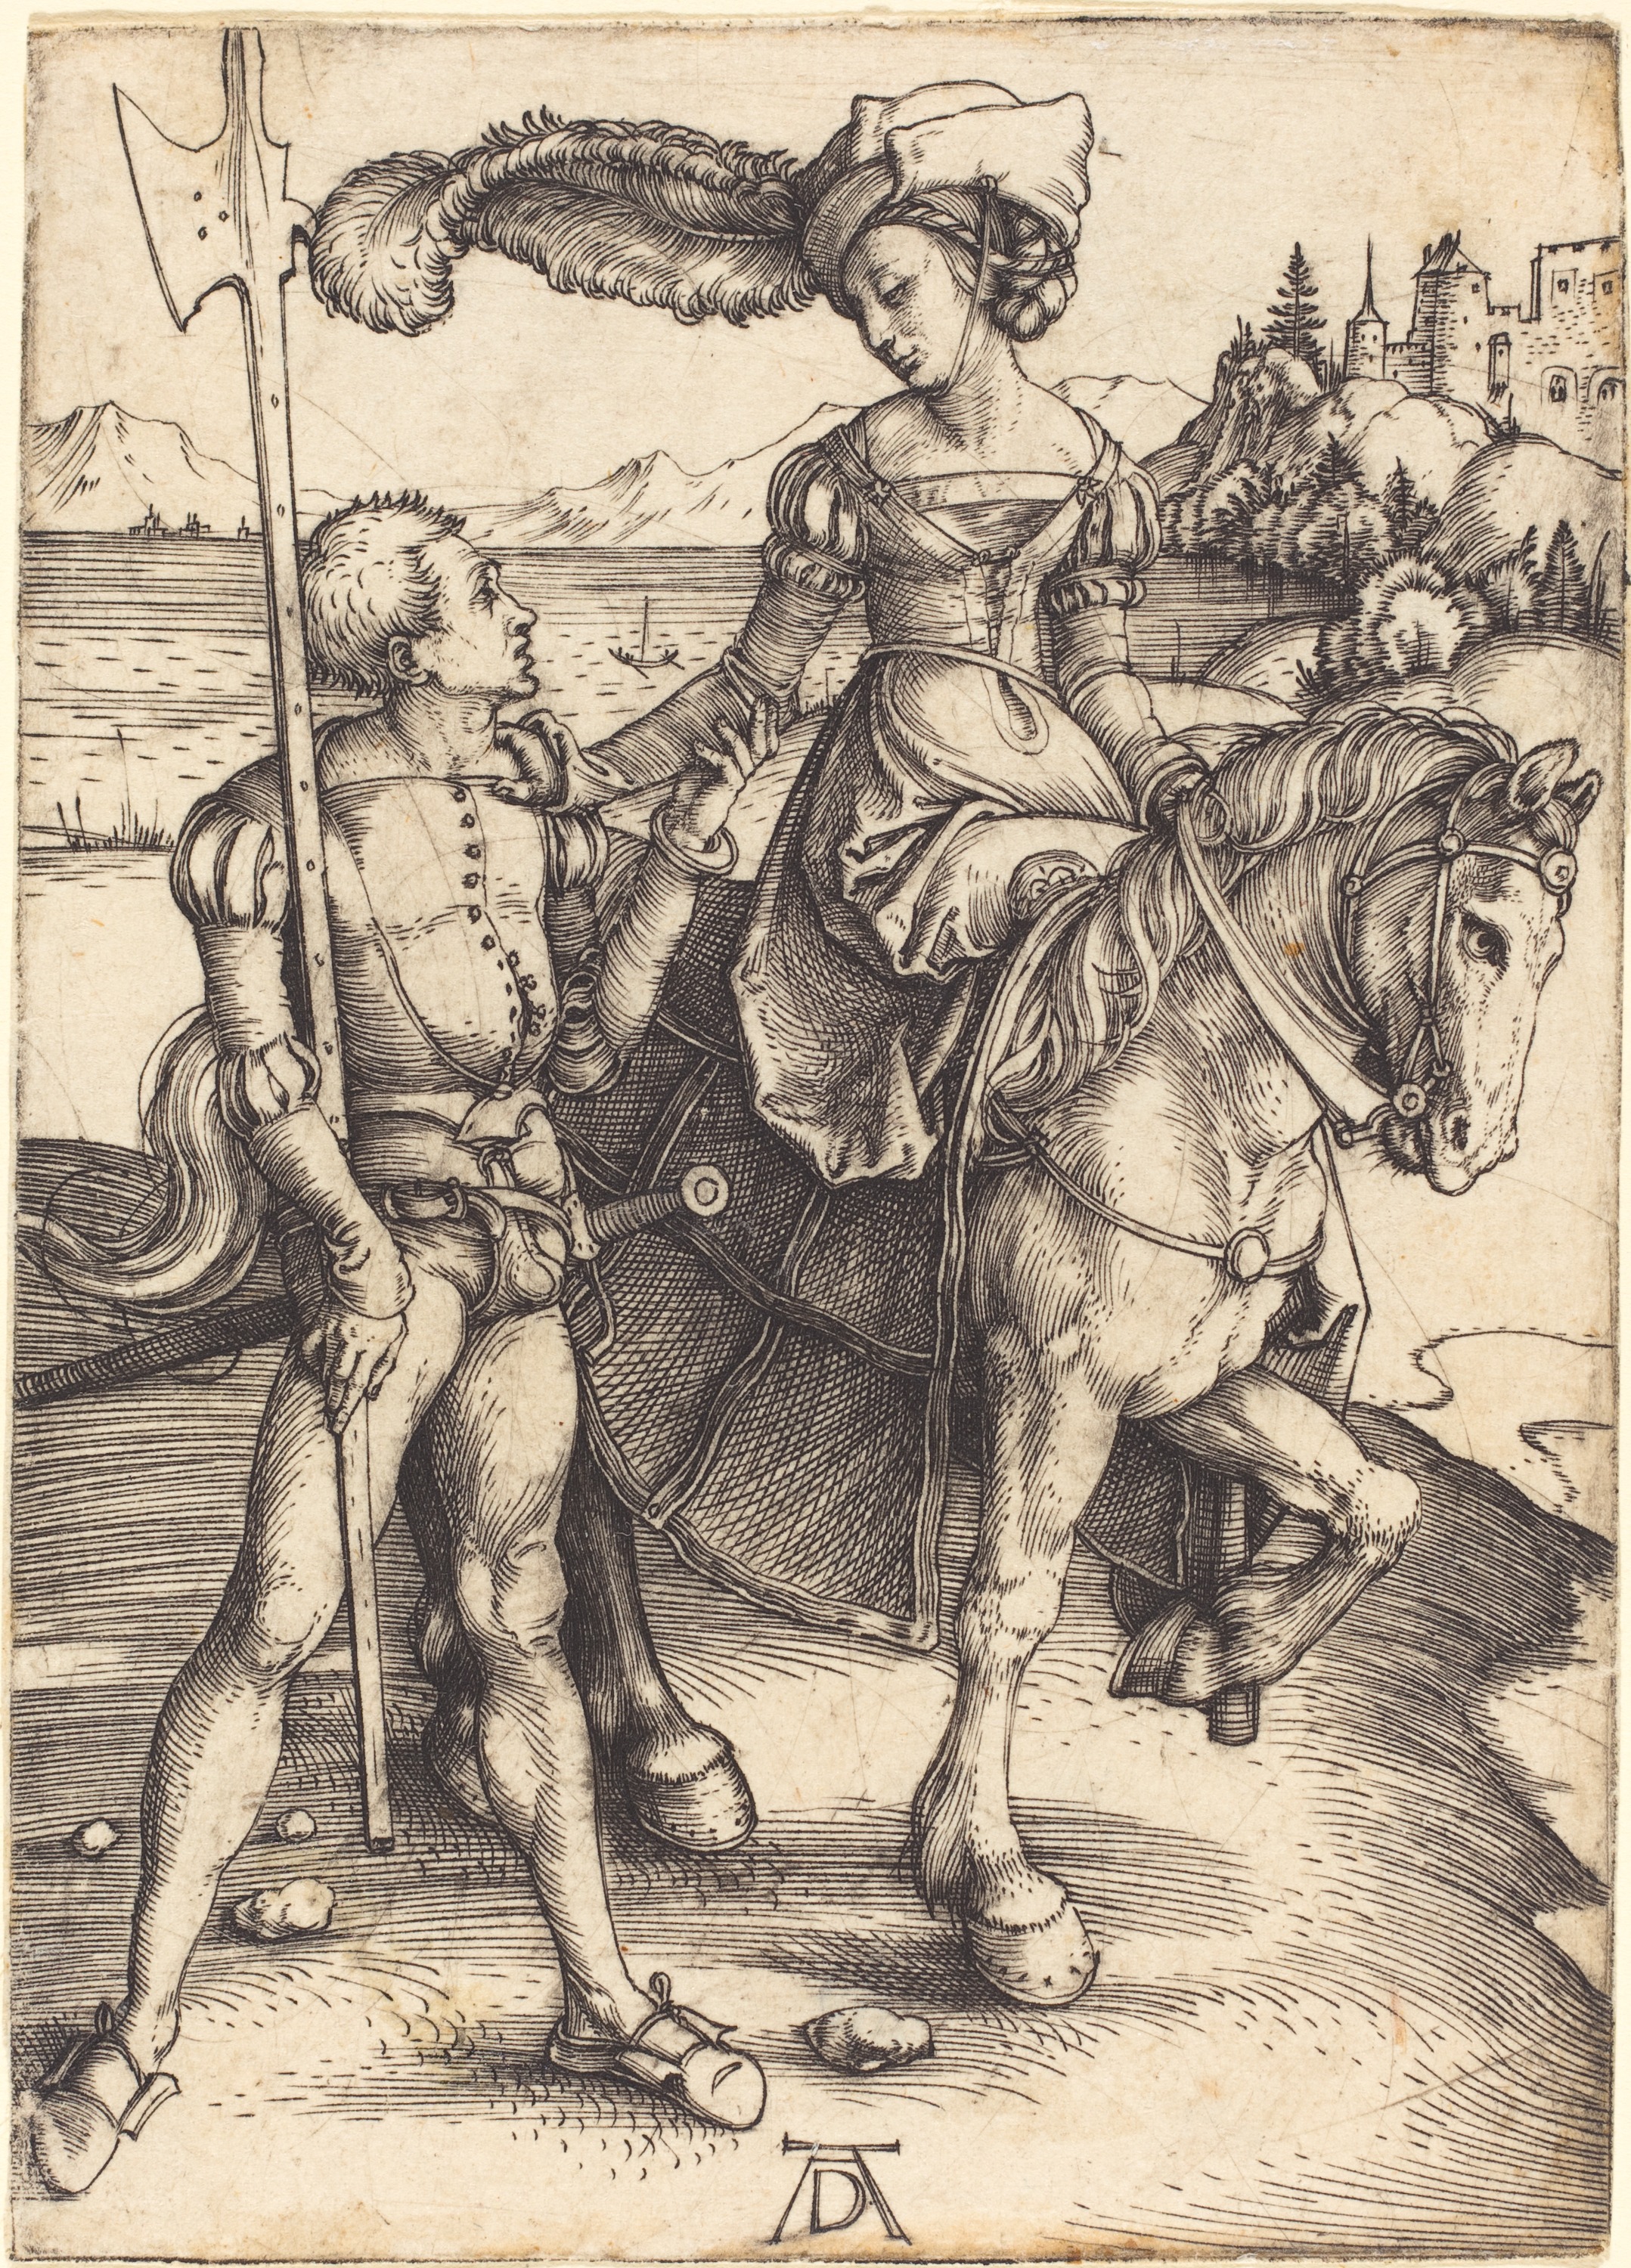 말에 올라탄 숙녀와 용병 by Albrecht Dürer - 대략 1497년 경 - 109 x 78mm 